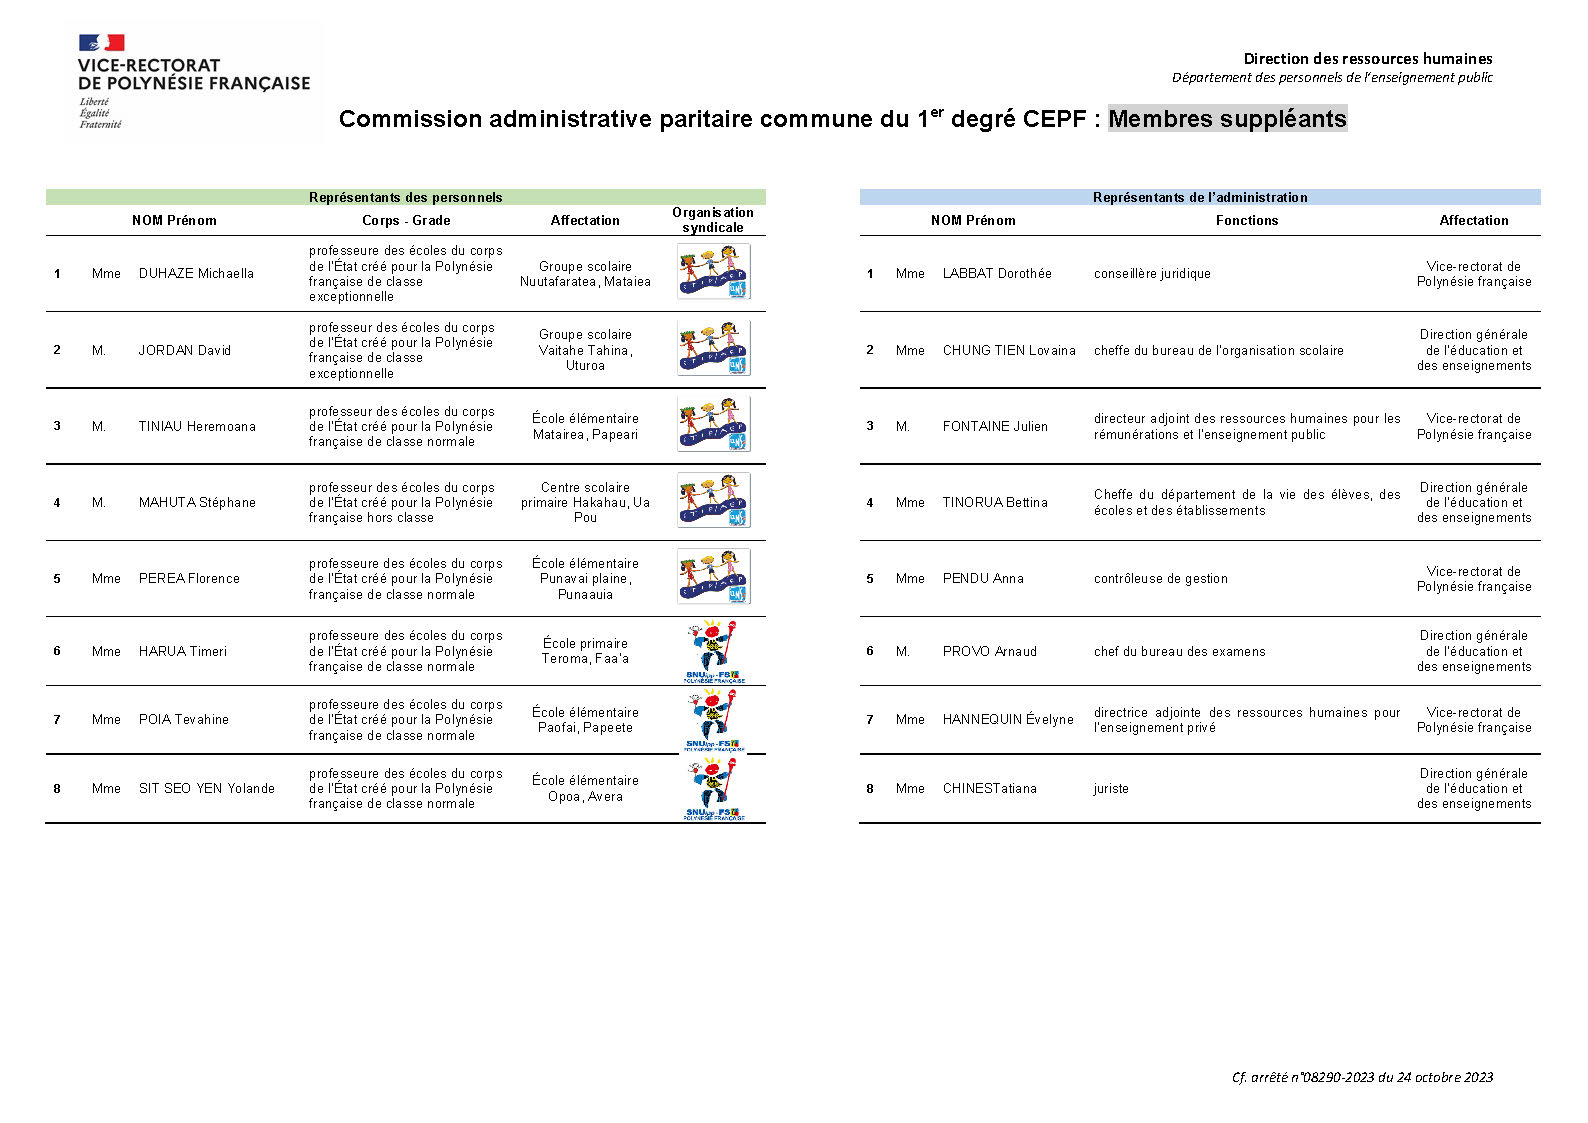 Composition de la CAPC du 1er degré CEPF V24-10-2023_Suppléants